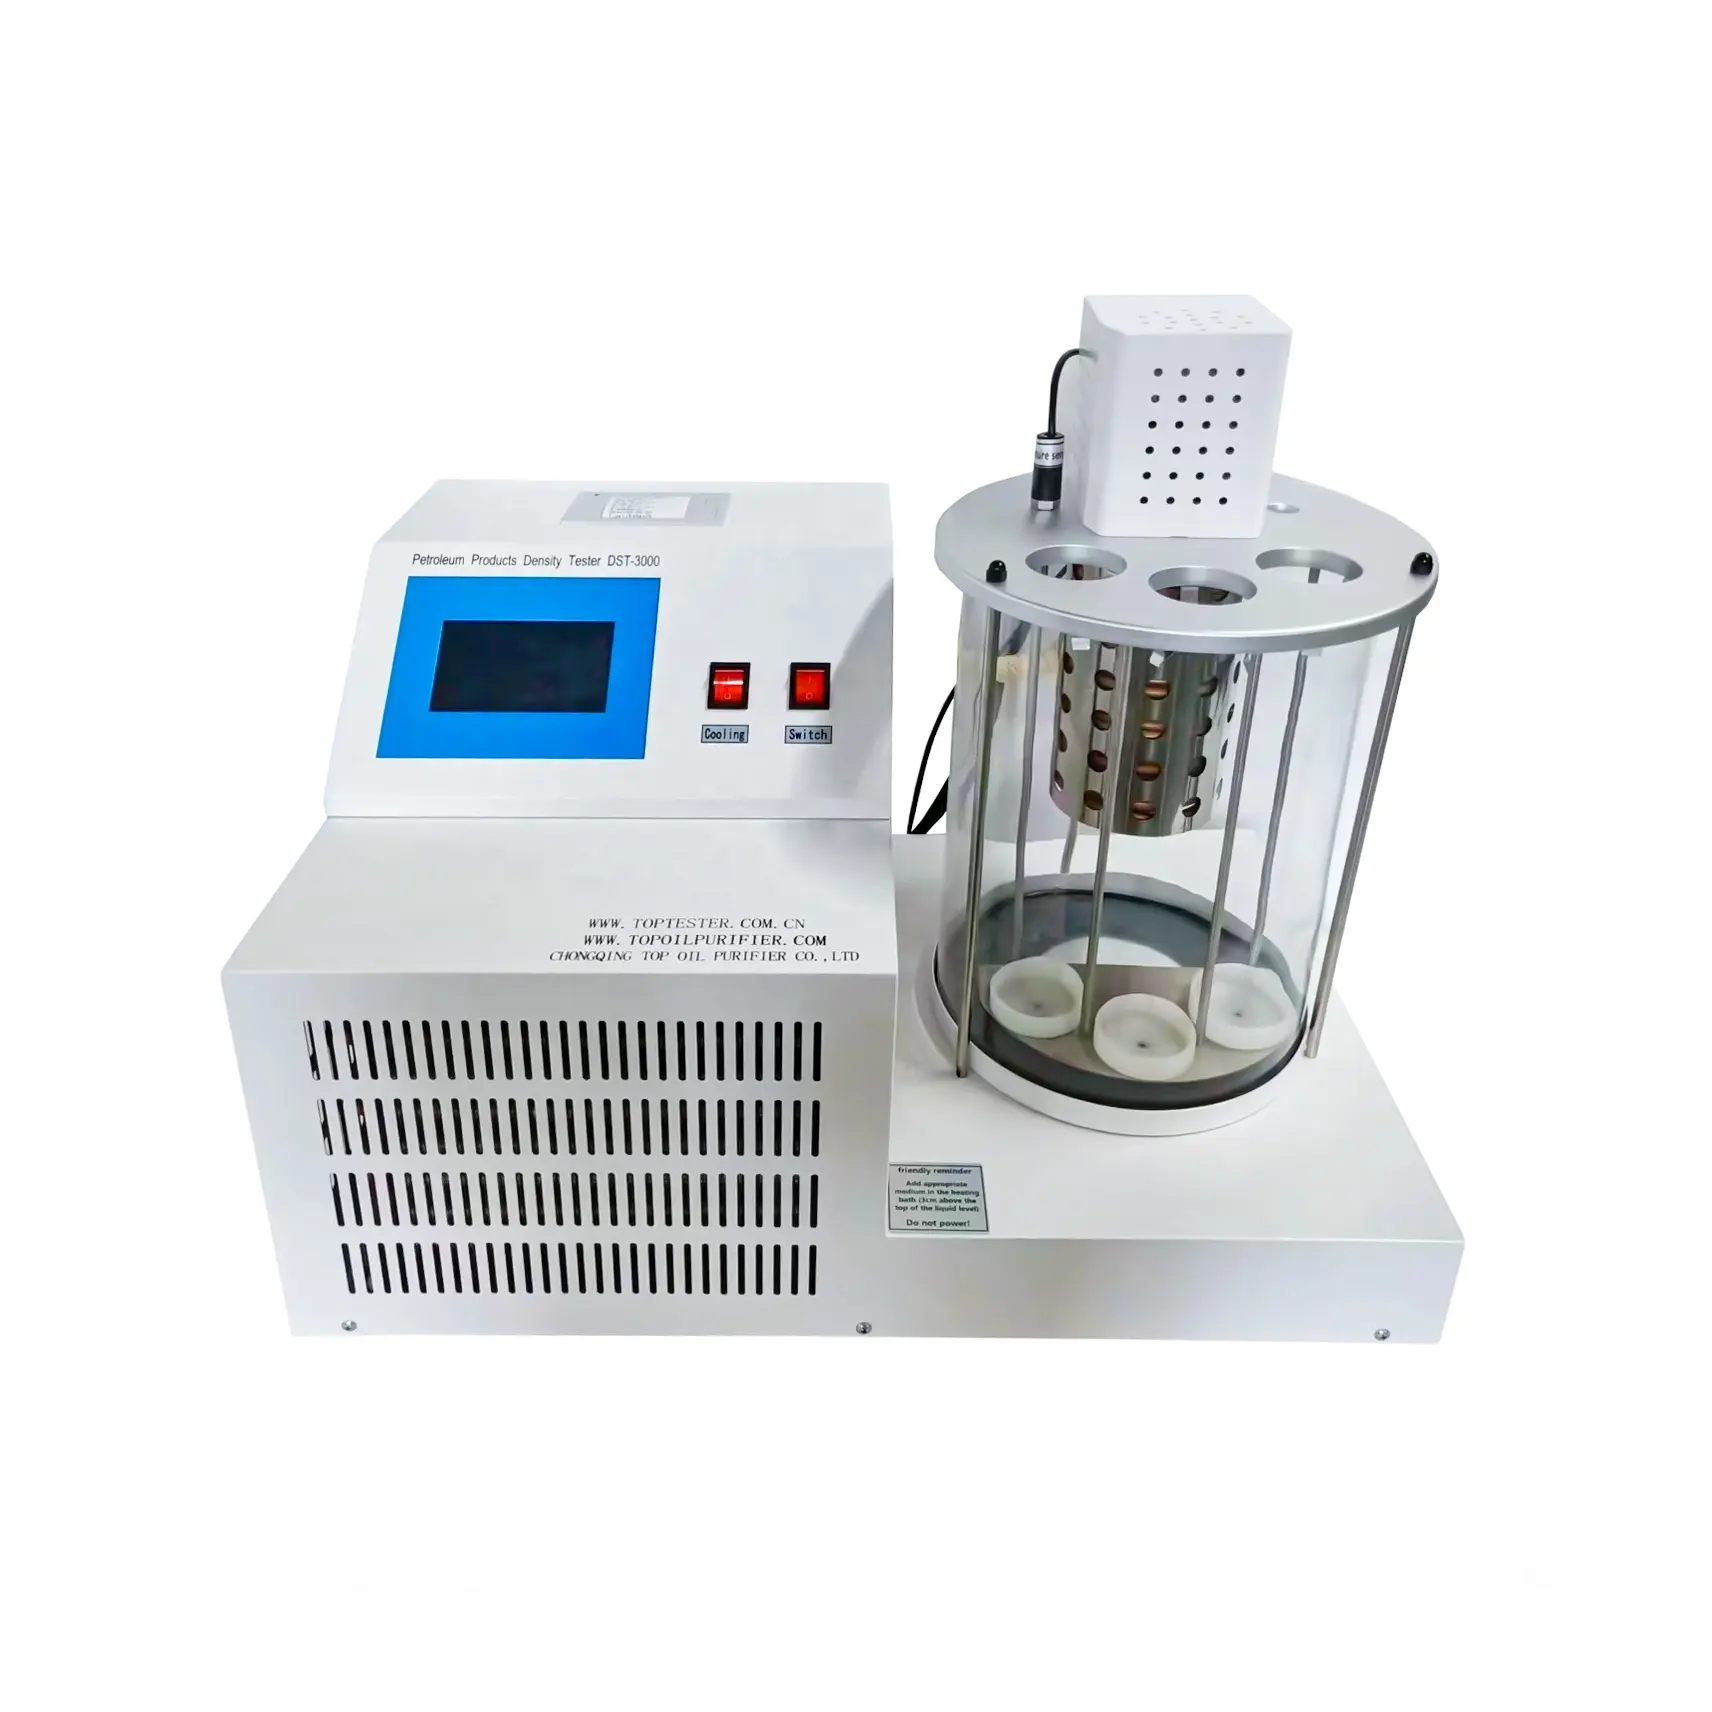 جهاز اختبار كثافة منتجات البترول DST-3000 لزيت التشحيم والزيوت الهيدروليكية